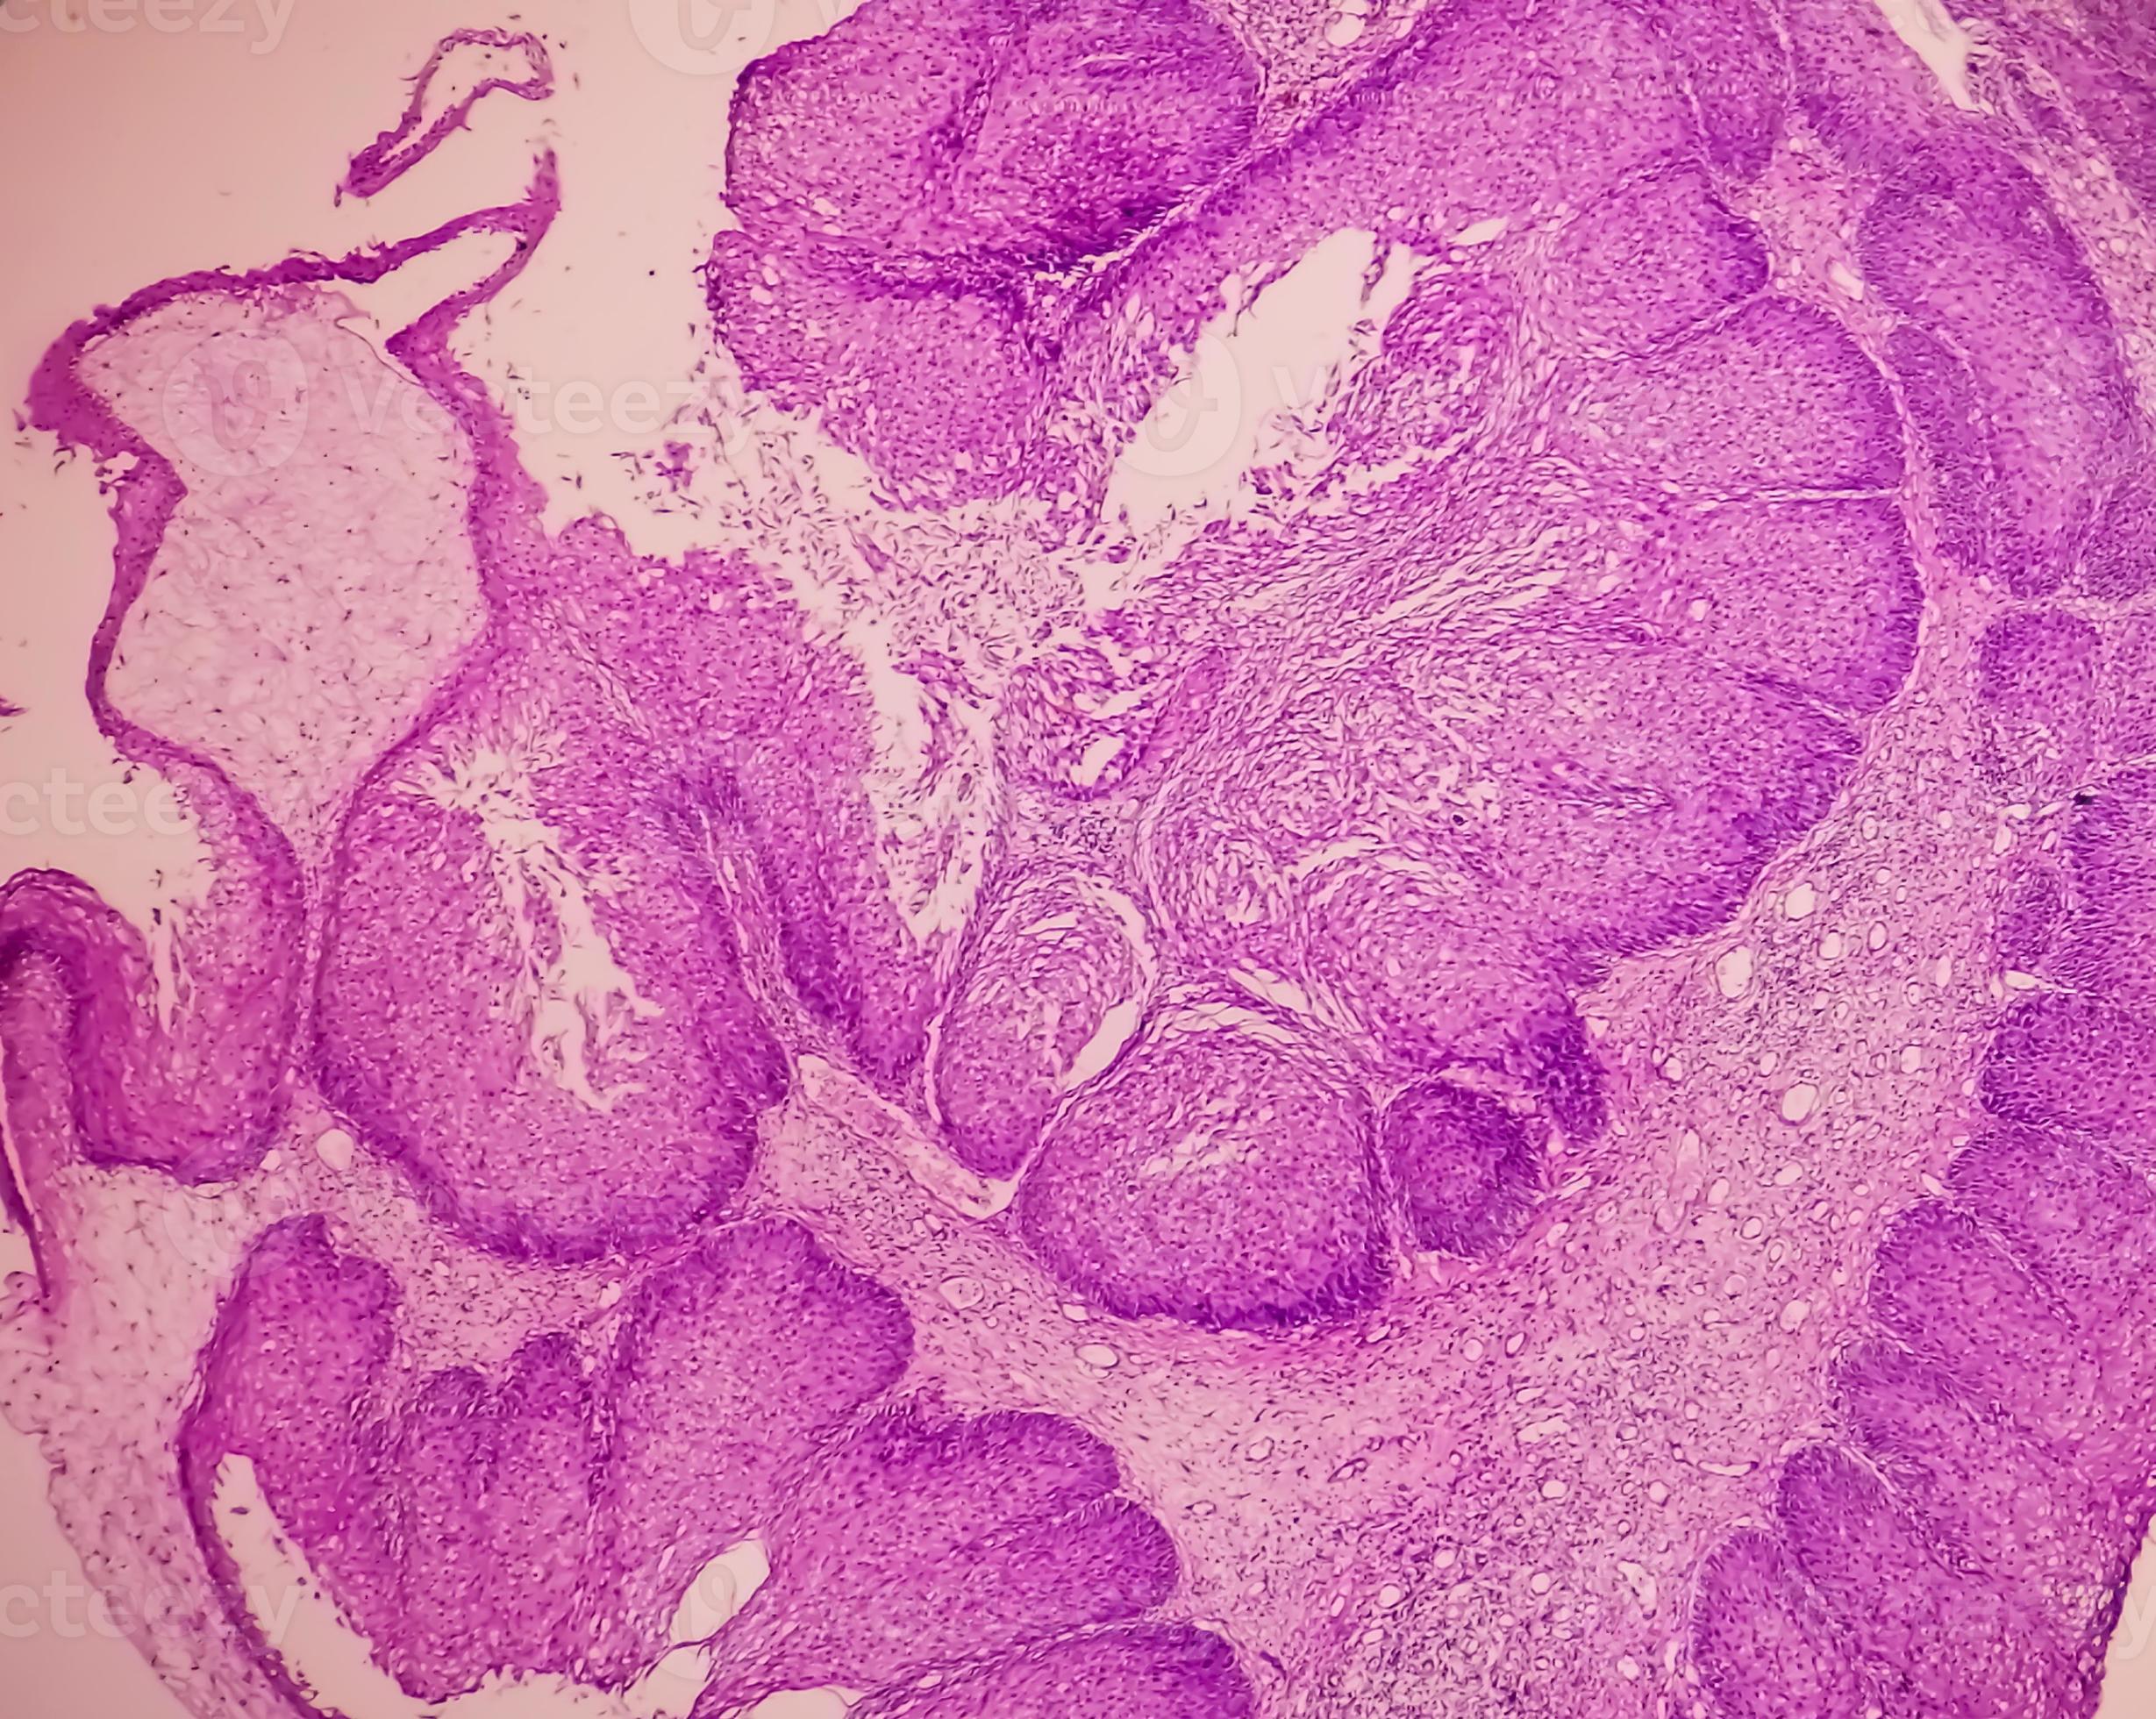 Arcüreggyulladás (orrmelléküreg-gyulladás) tünetei és kezelése - Papilloma sinus üreg